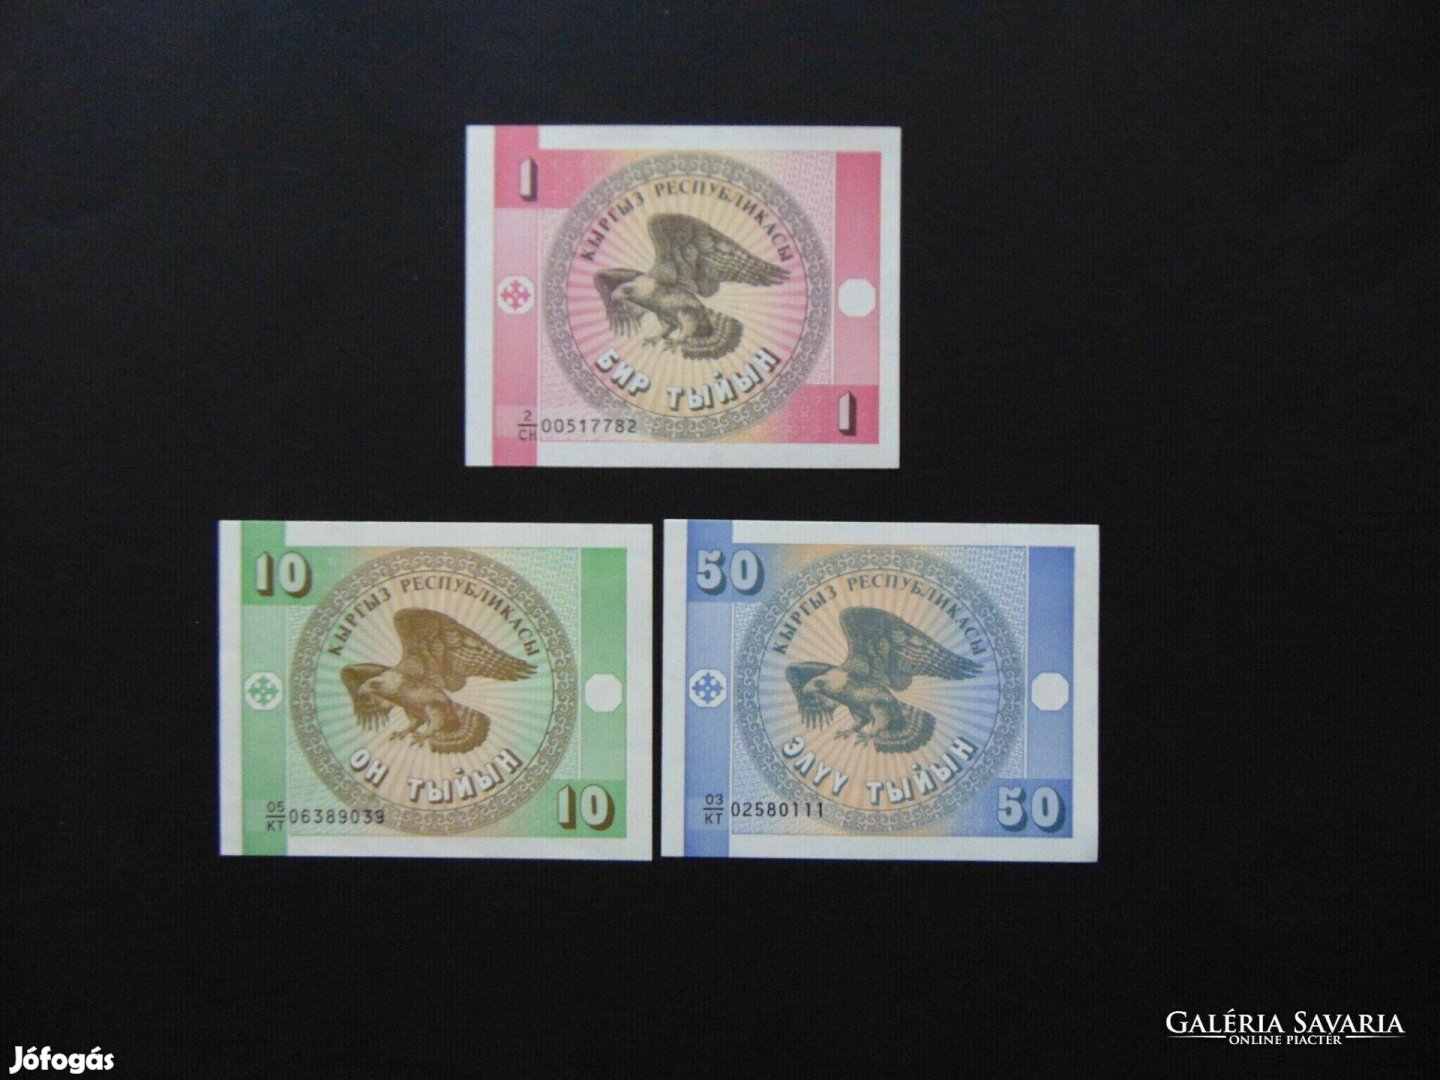 Kirgizisztán 1 - 10 -50 szom LOT ! Hajtatlan bankjegyek